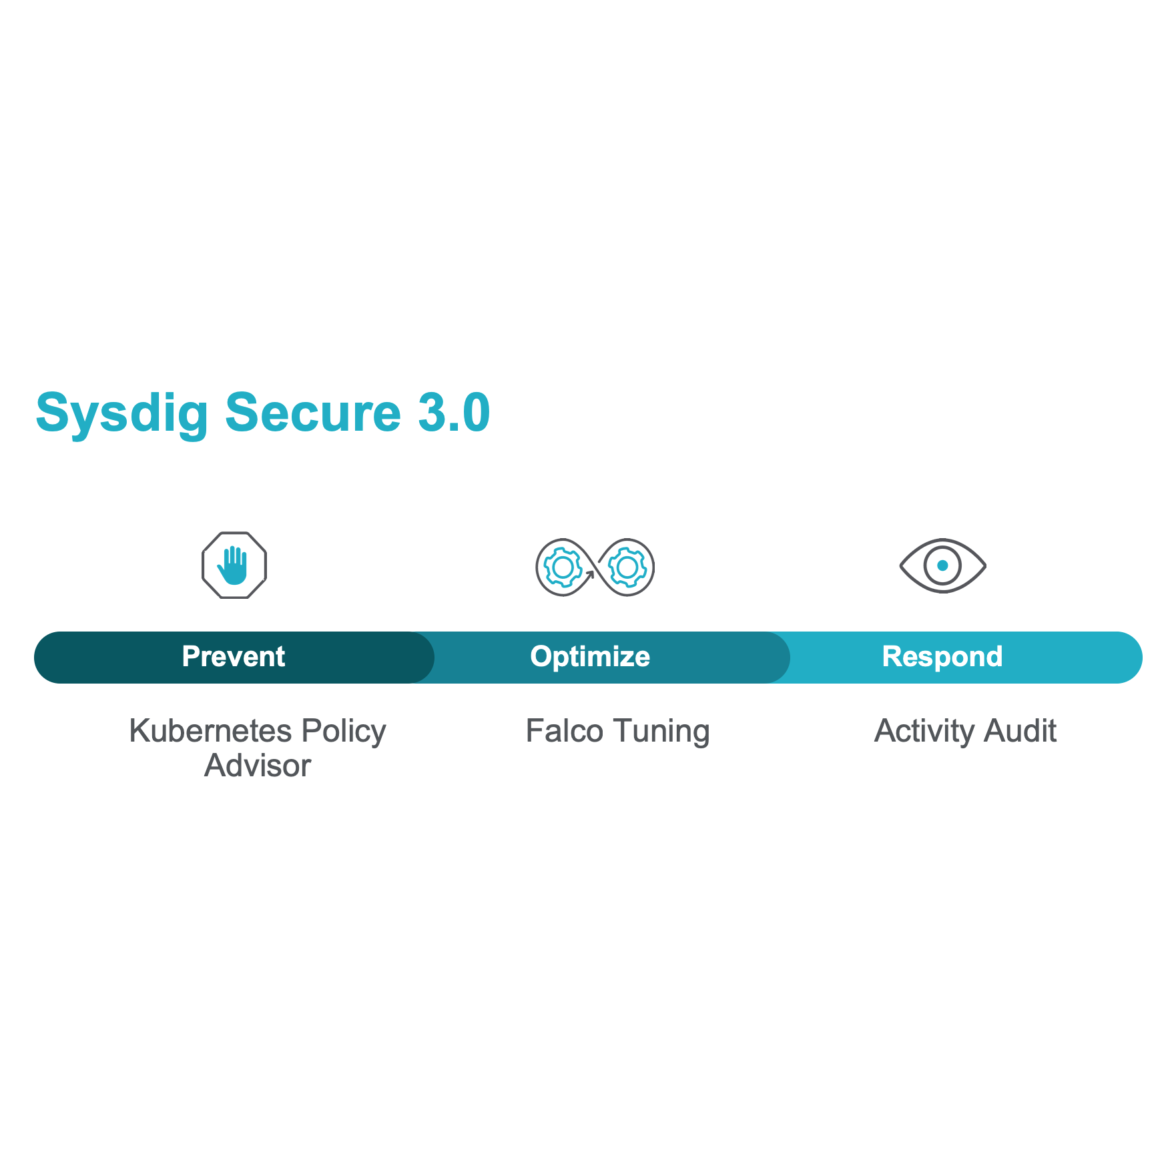 Sysdig Secure 3.0は、Kubernetesにおいてネイティブな防止とインシデント対応を実現します